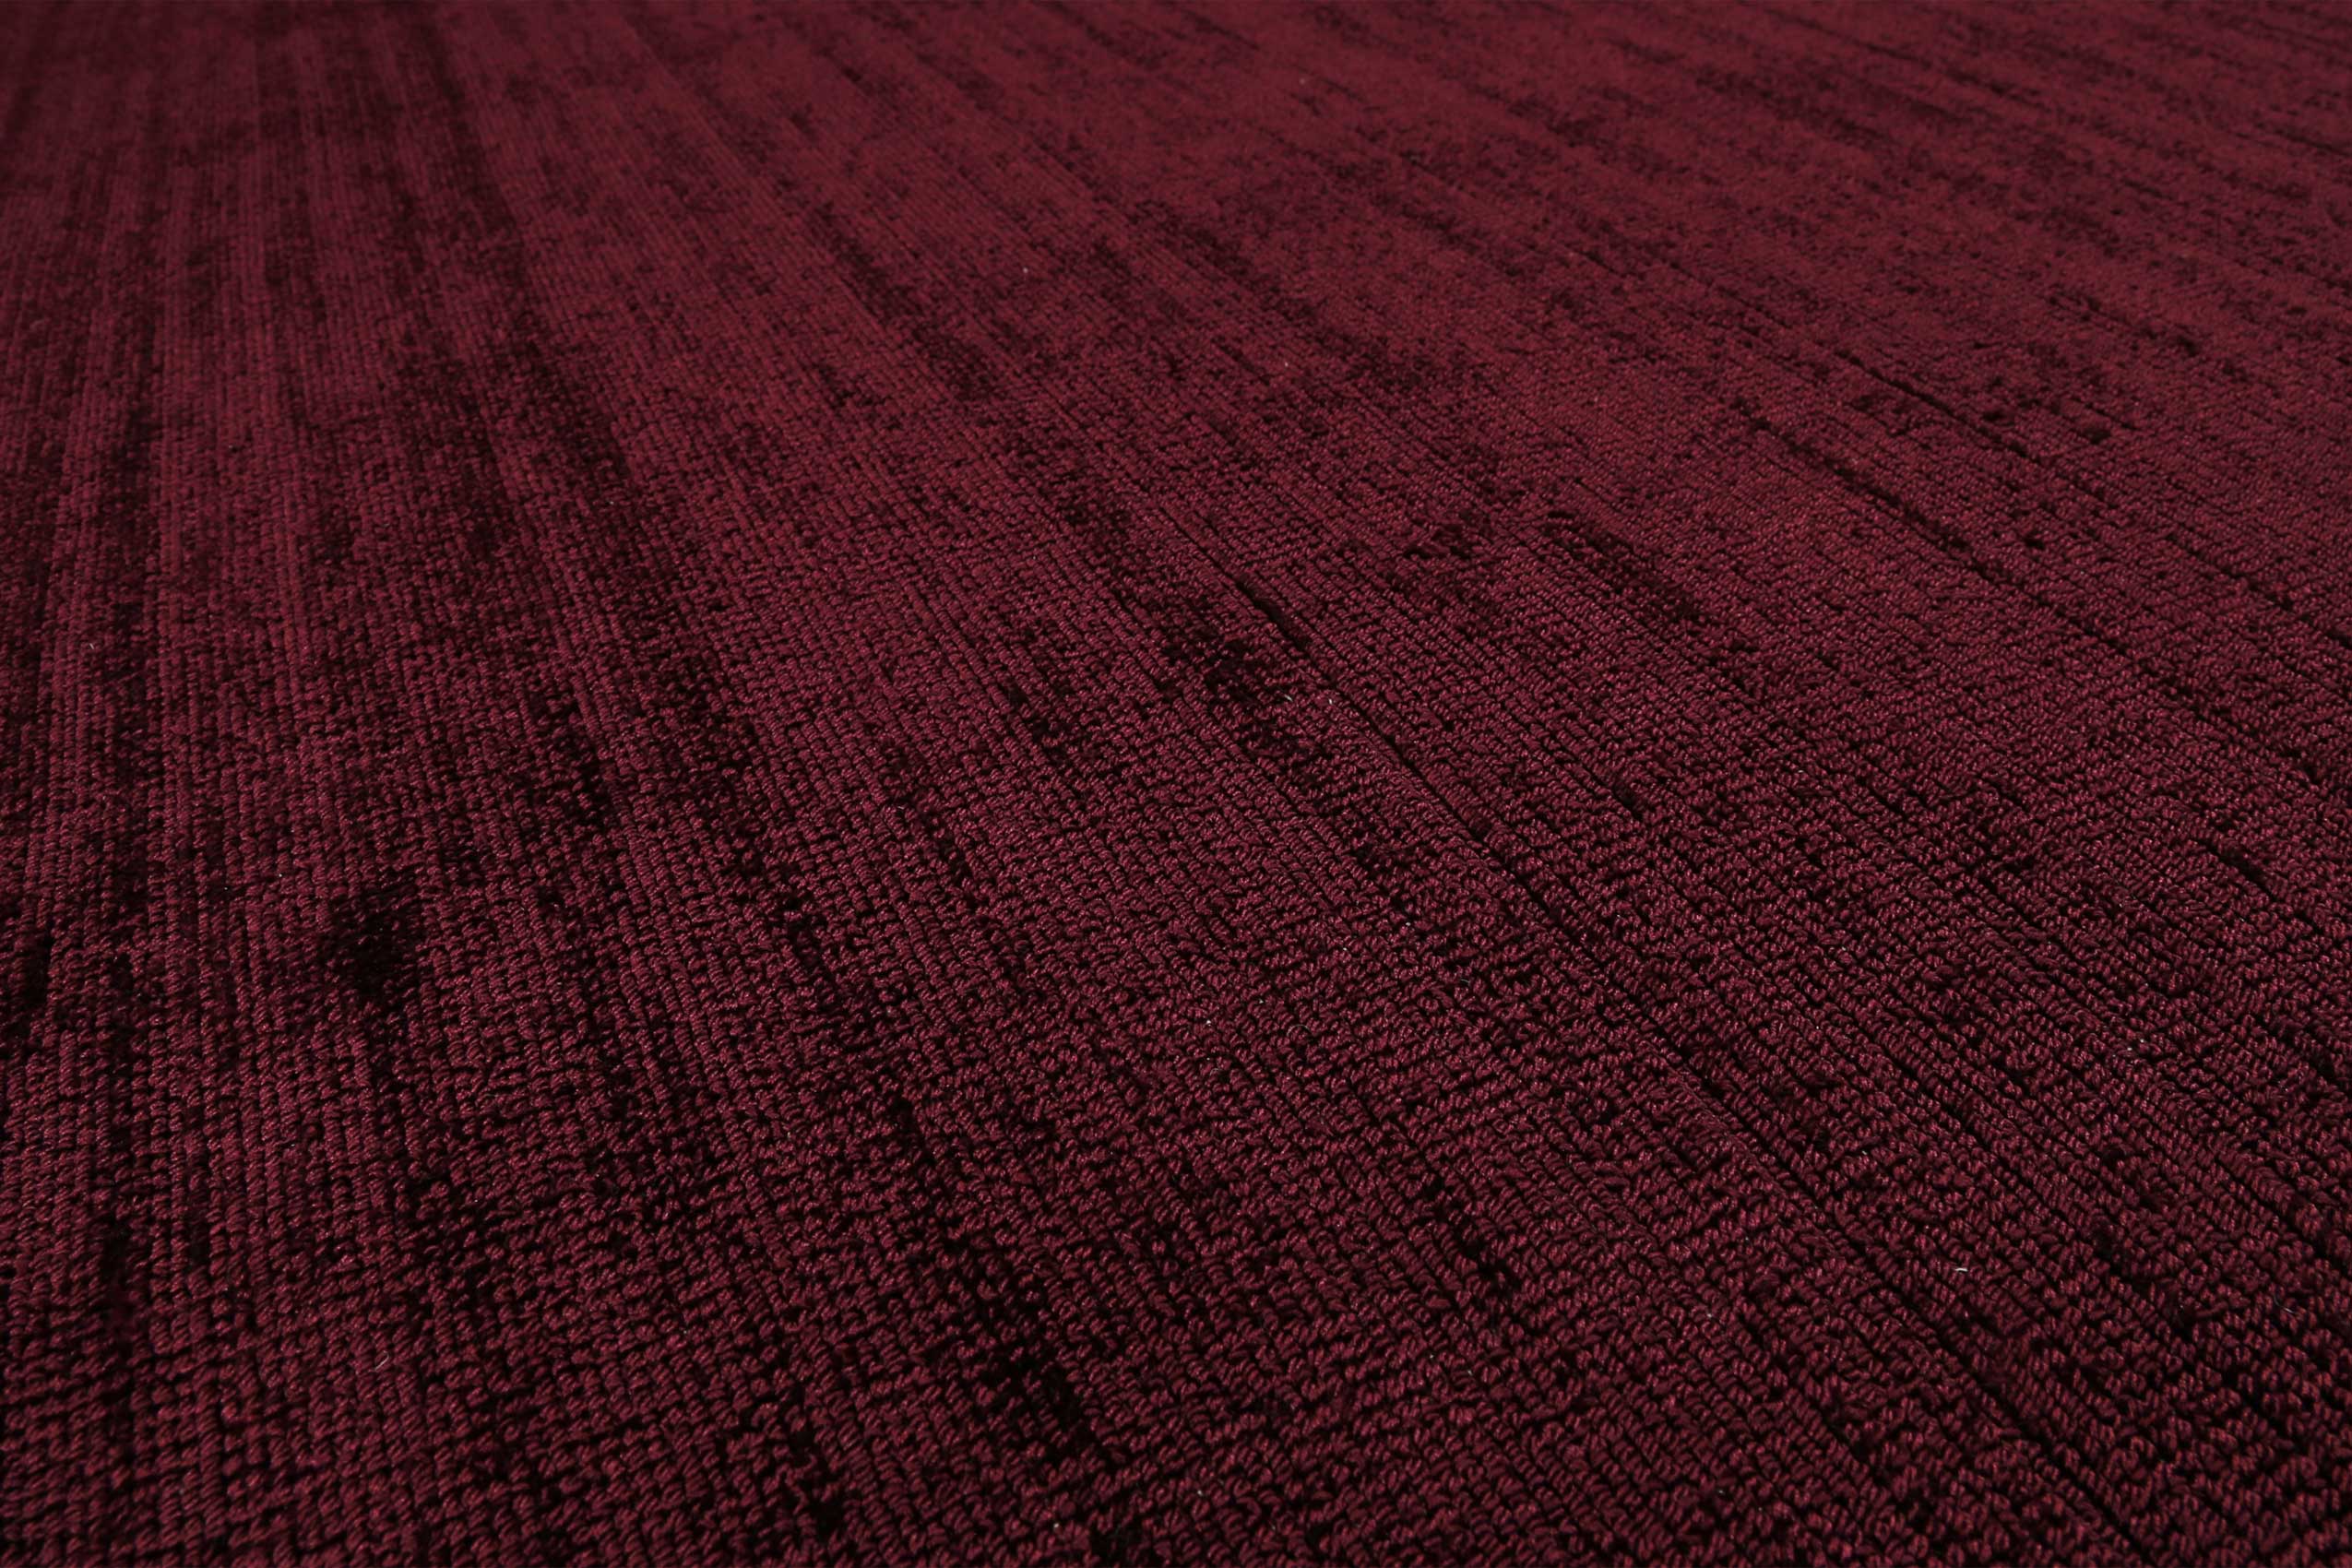 Esprit Kurzflor Teppich Bordeaux Rot » Gil « - Ansicht 5